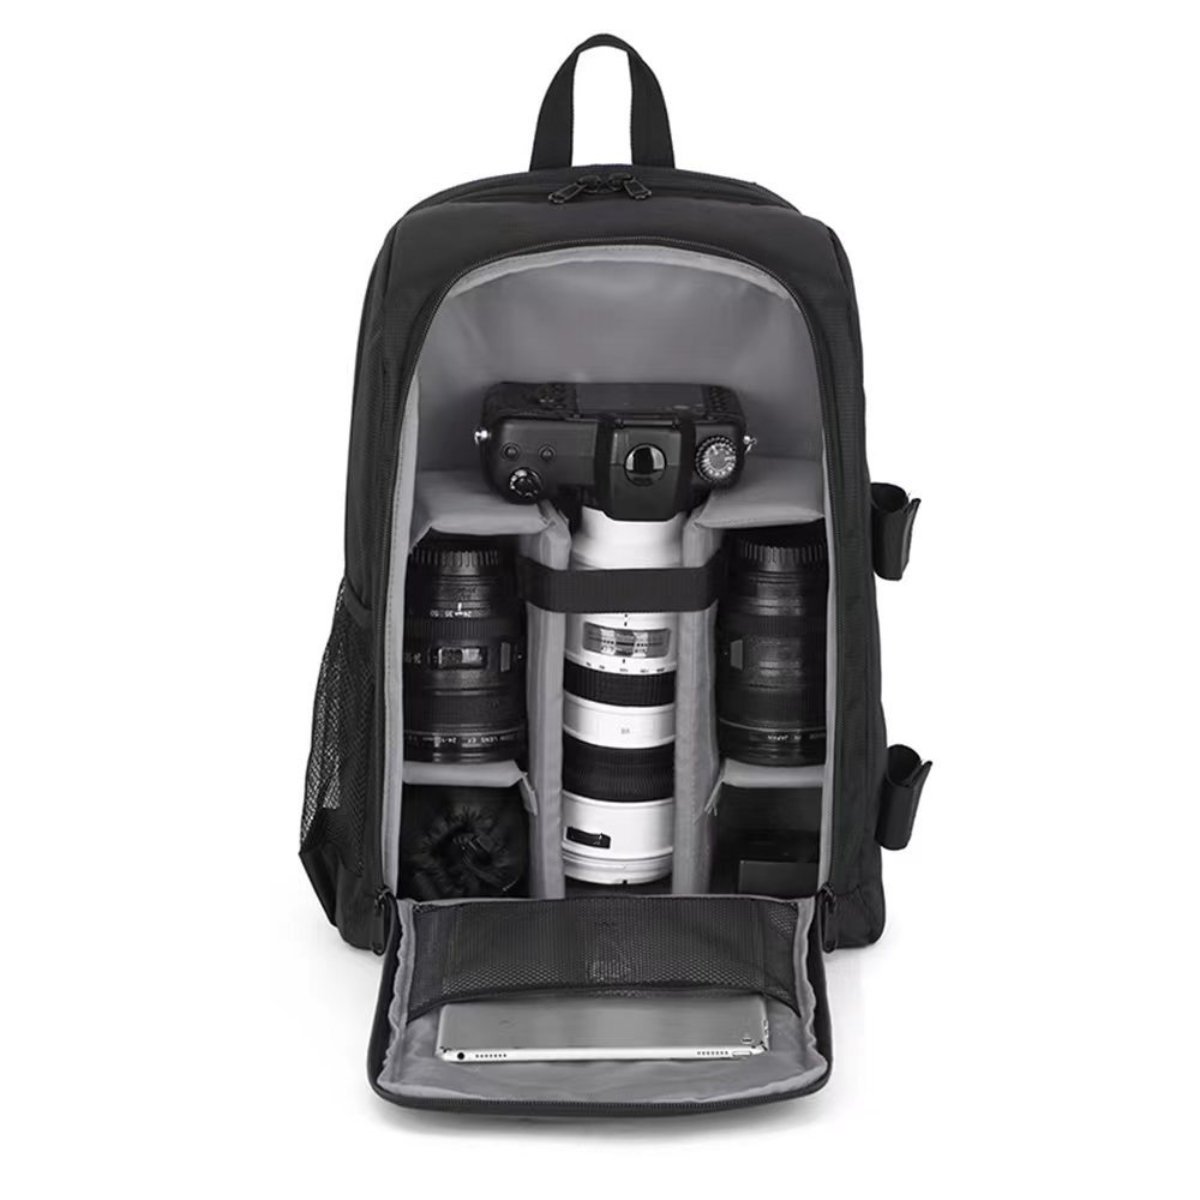 Tasche SLR Digitalkamera Outdoor-Fotografie grau Rucksäcke SYNTEK tragen Kameratasche, Schultern wasserdicht Tasche